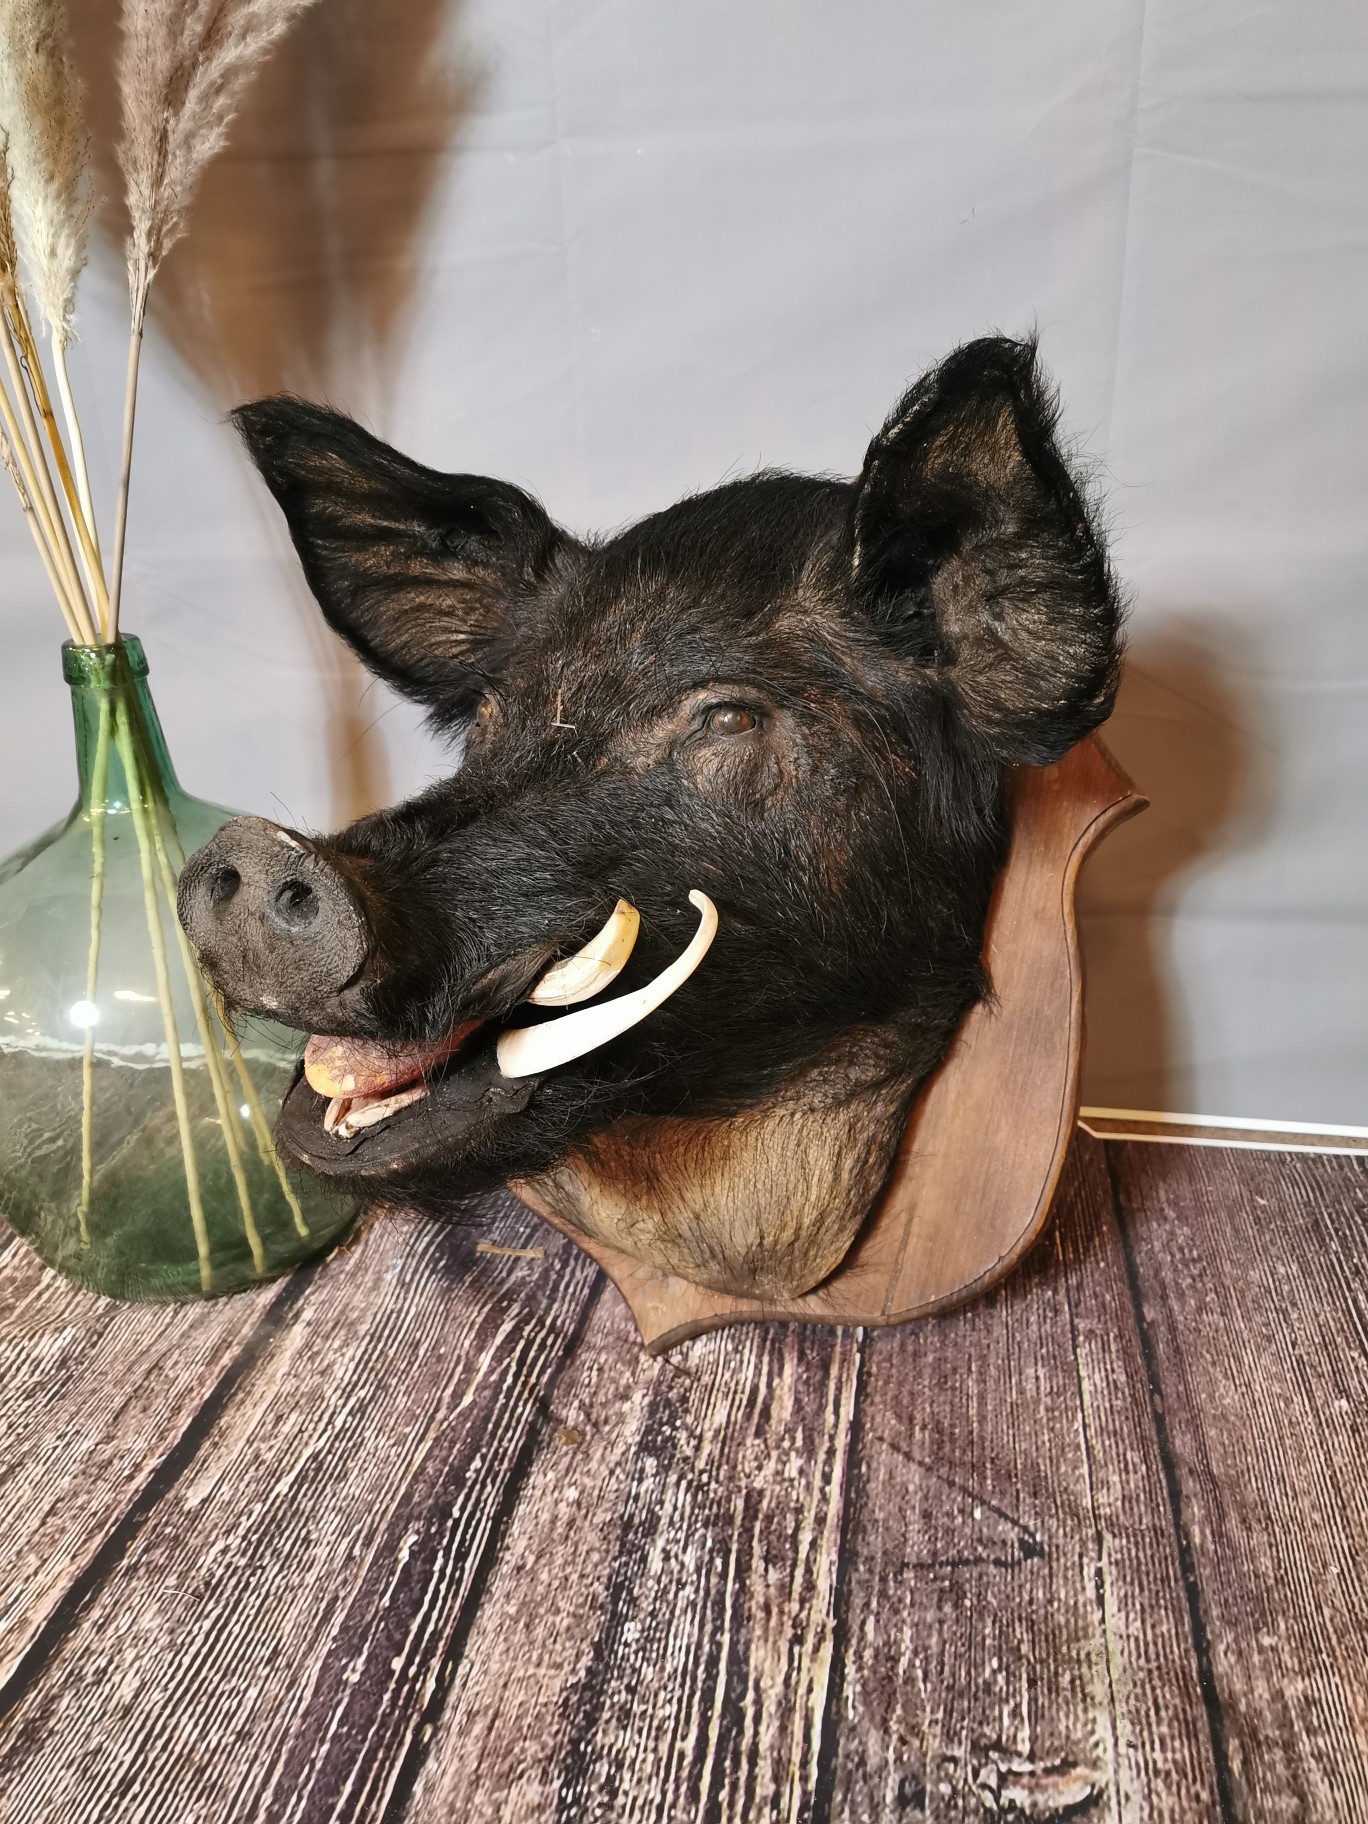 A taxidermy boar head